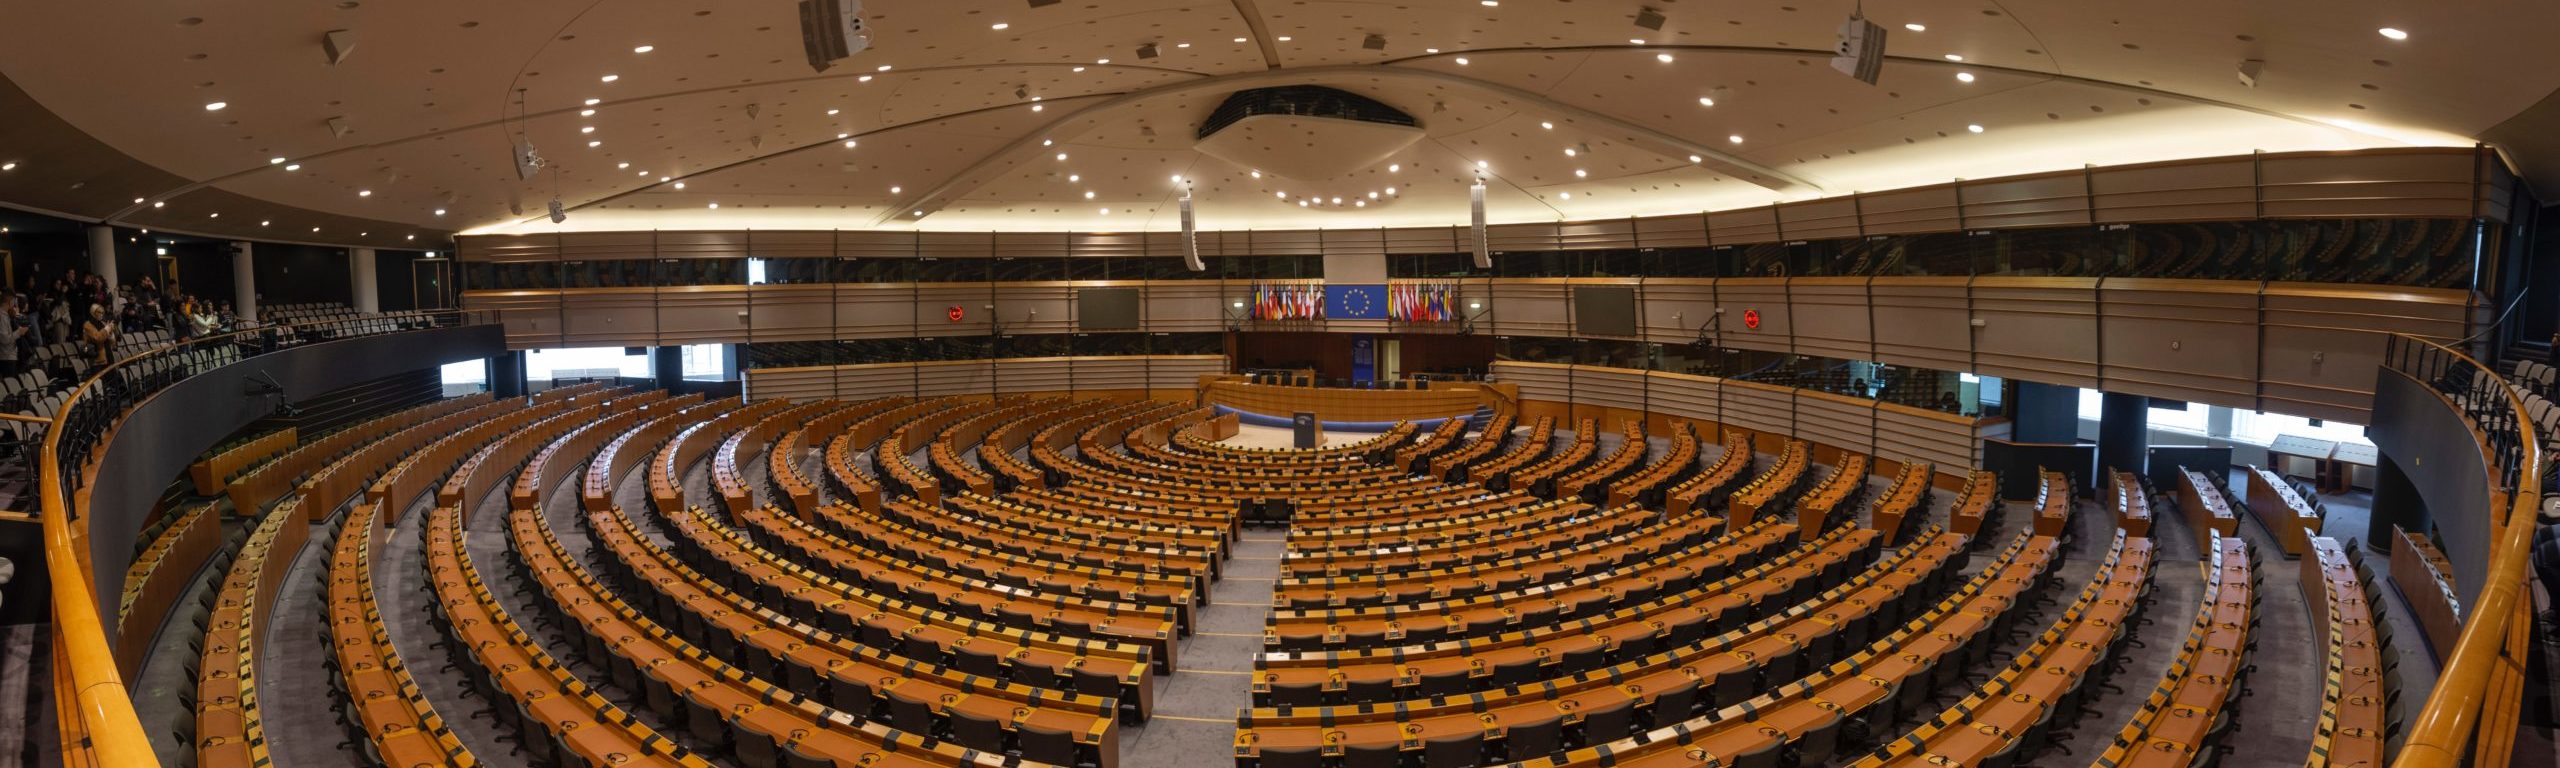 Empty auditorium of European Institution ©Marius Oprea, unsplash.com